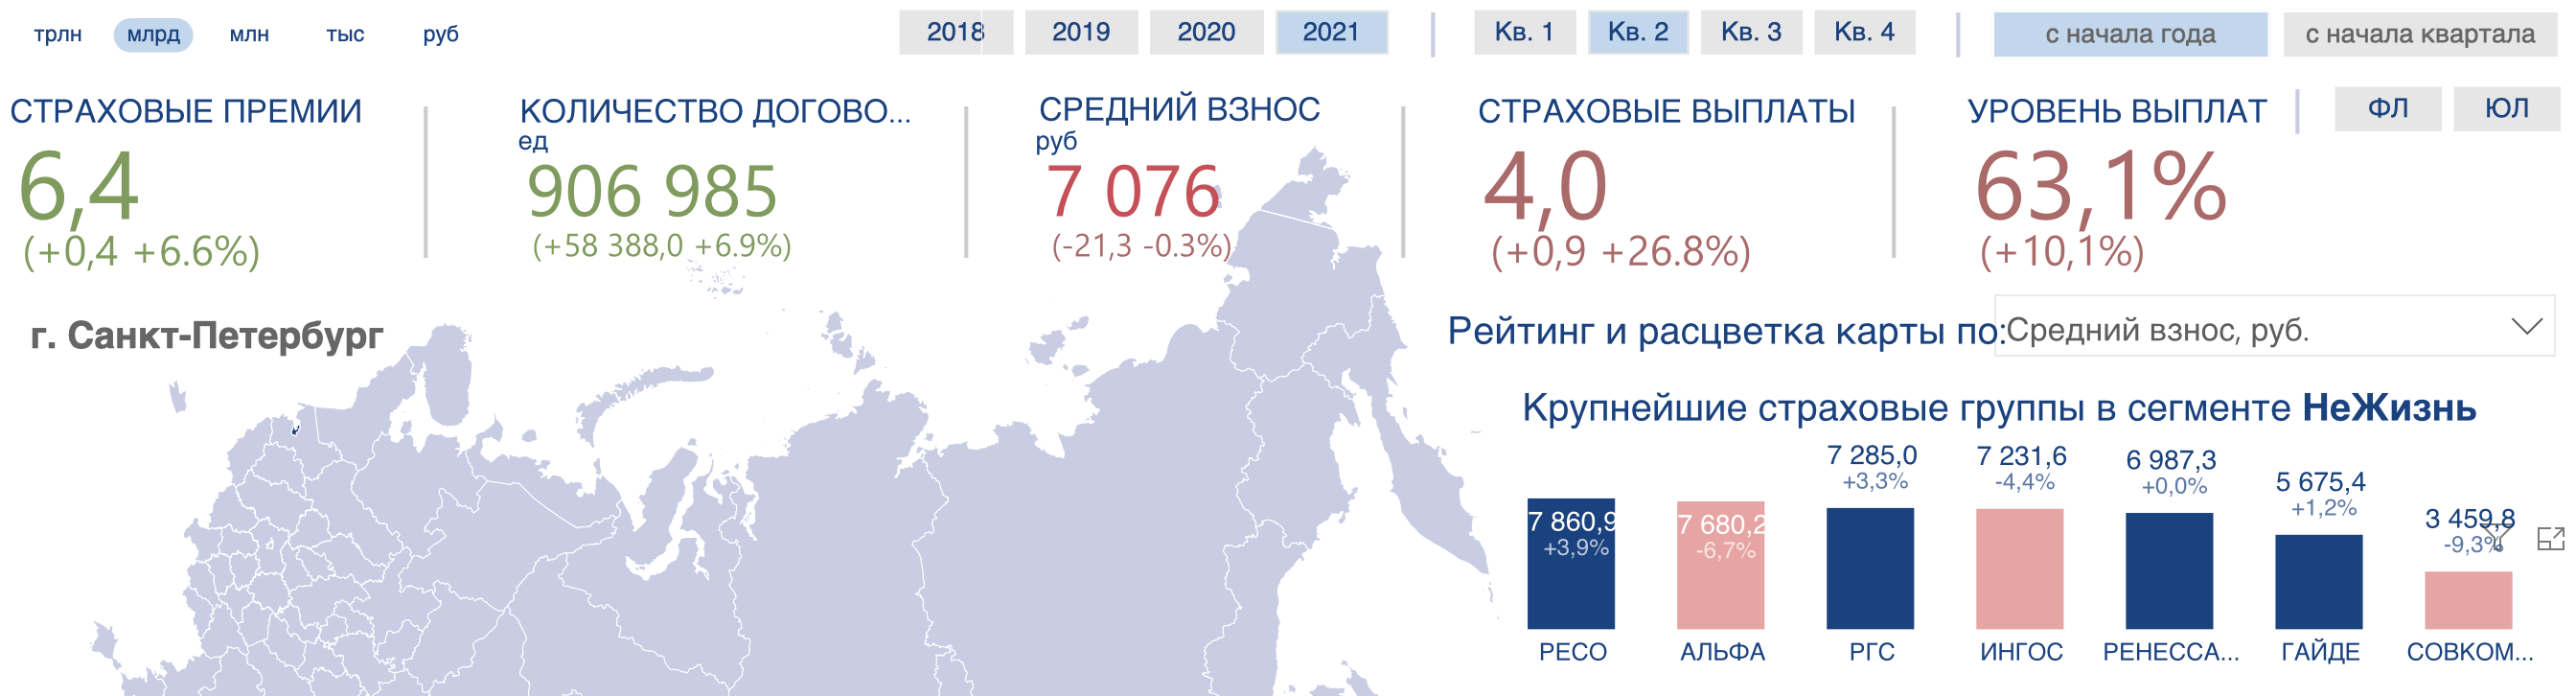 Средняя стоимость ОСАГО в Санкт-Петербурге 1 полугодие 2021 года